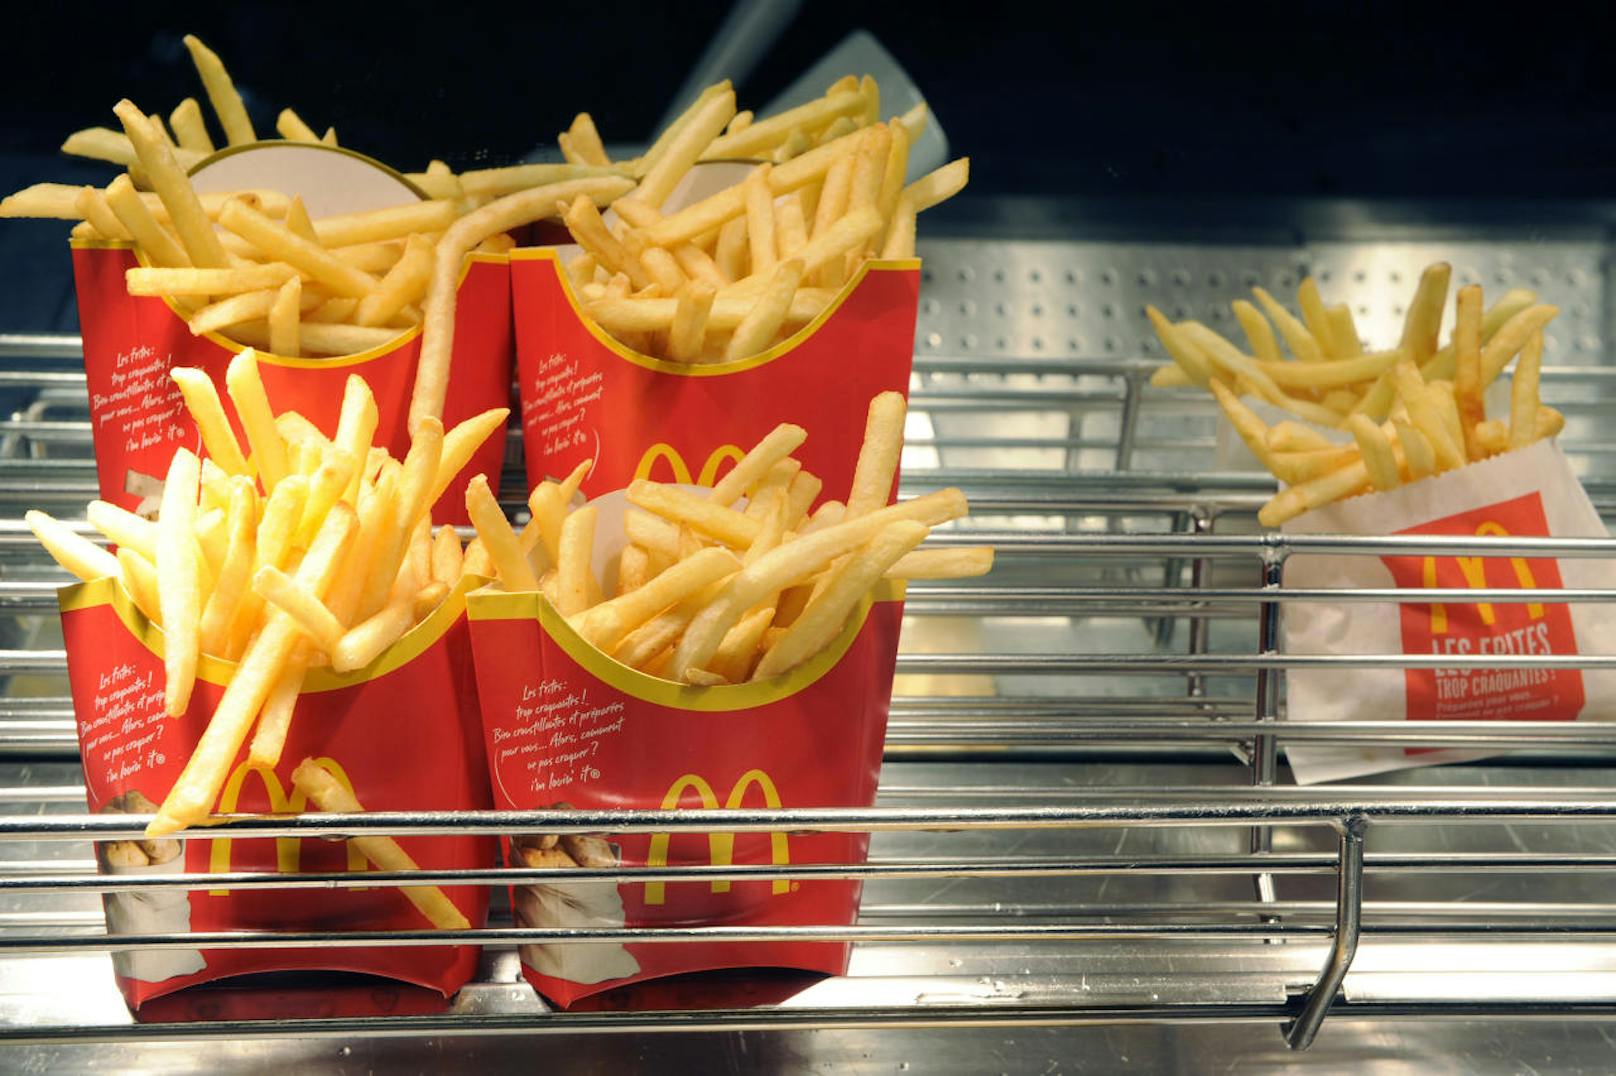 Ein Sprecher von McDonald's hat diese Vorwürfe gegenüber britischen Medien bereits dementiert: "Unsere Mitarbeiter arbeiten hart, um Kunden unserer Restaurants das bestmögliche Erlebnis zu bieten und wir weisen jegliche Vorwürfe, die anderes behaupten, vehement zurück."